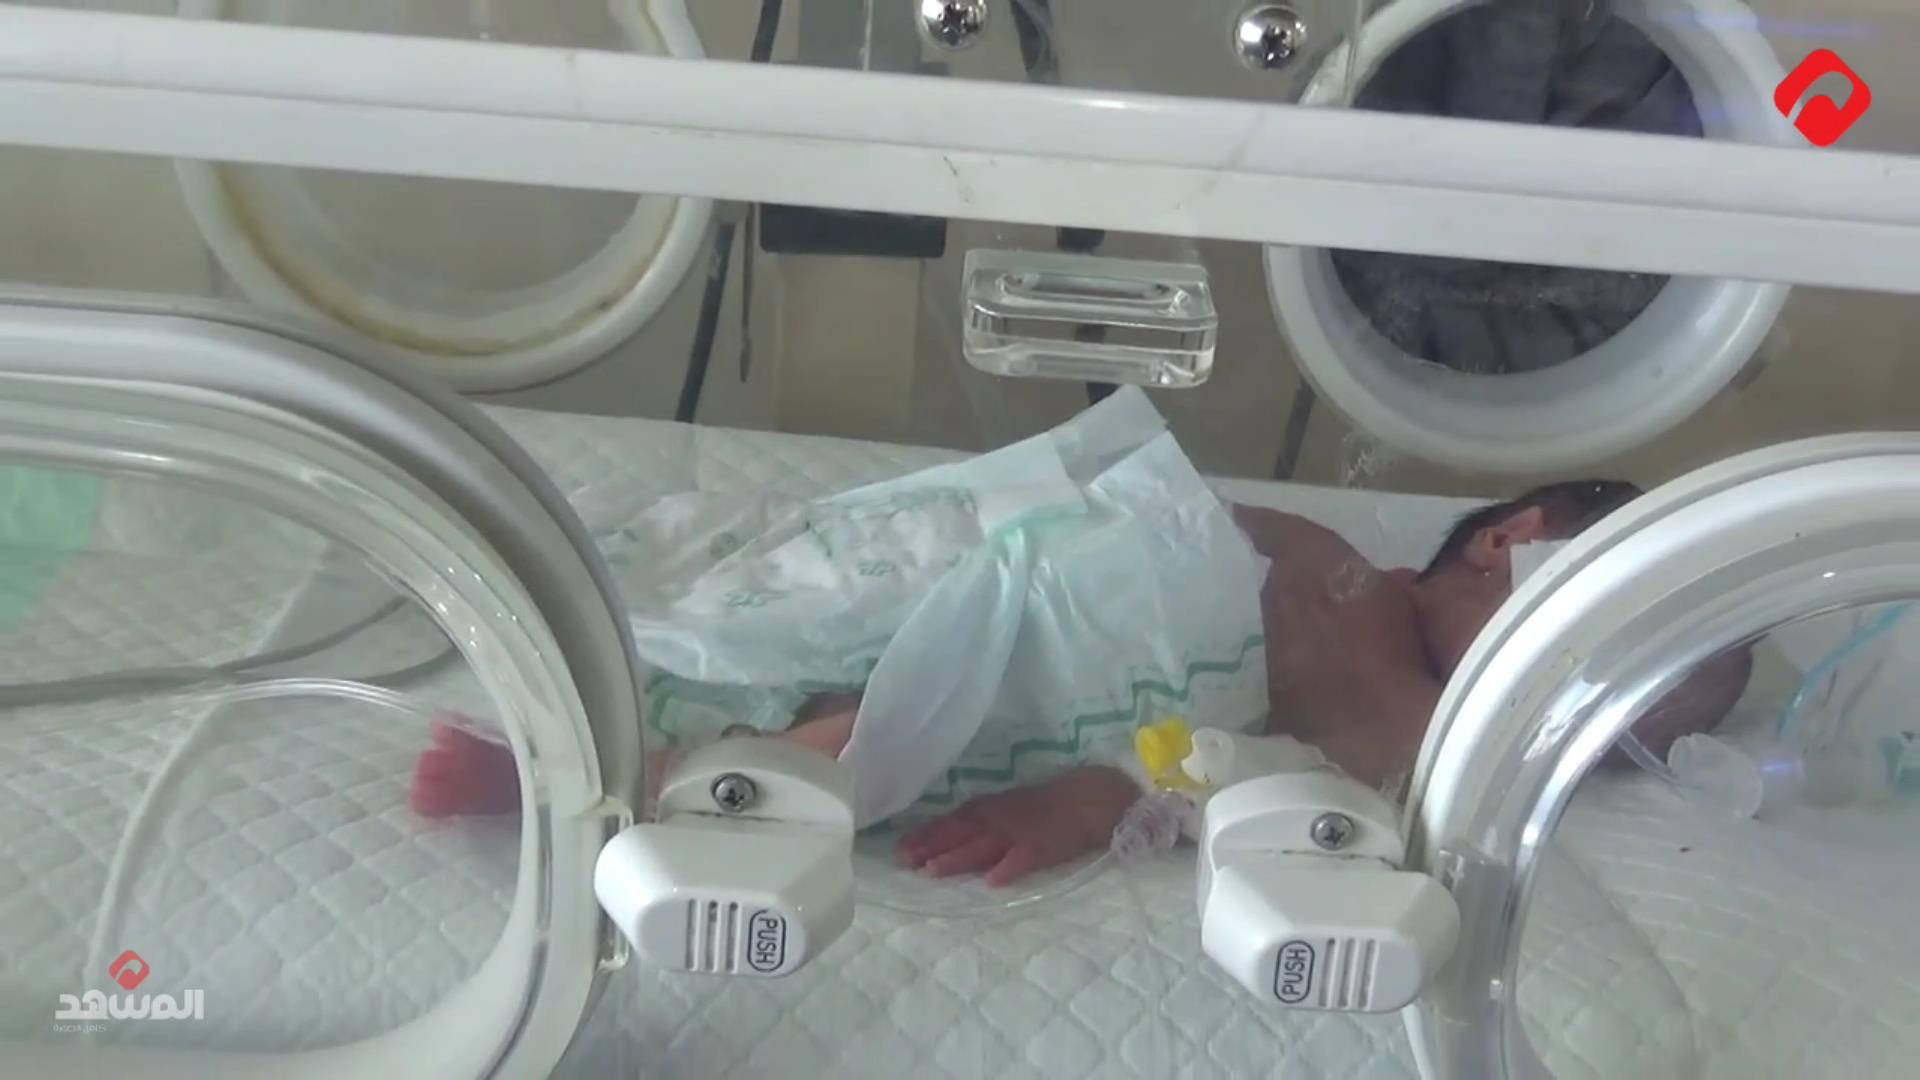 في حلب .. خمسة توائم لأم واحدة! (فيديو)